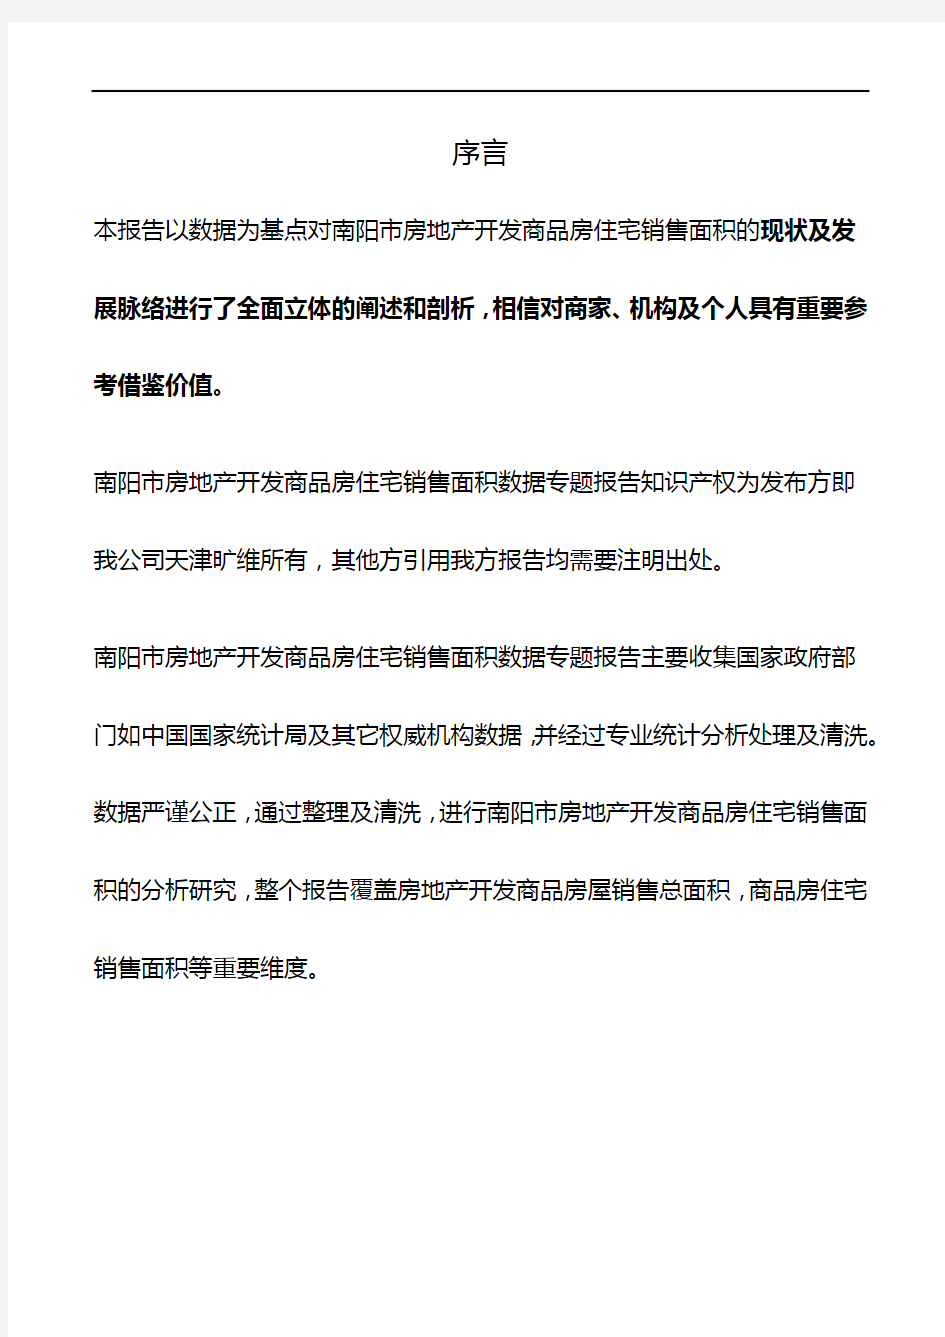 河南省南阳市房地产开发商品房住宅销售面积数据专题报告2019版